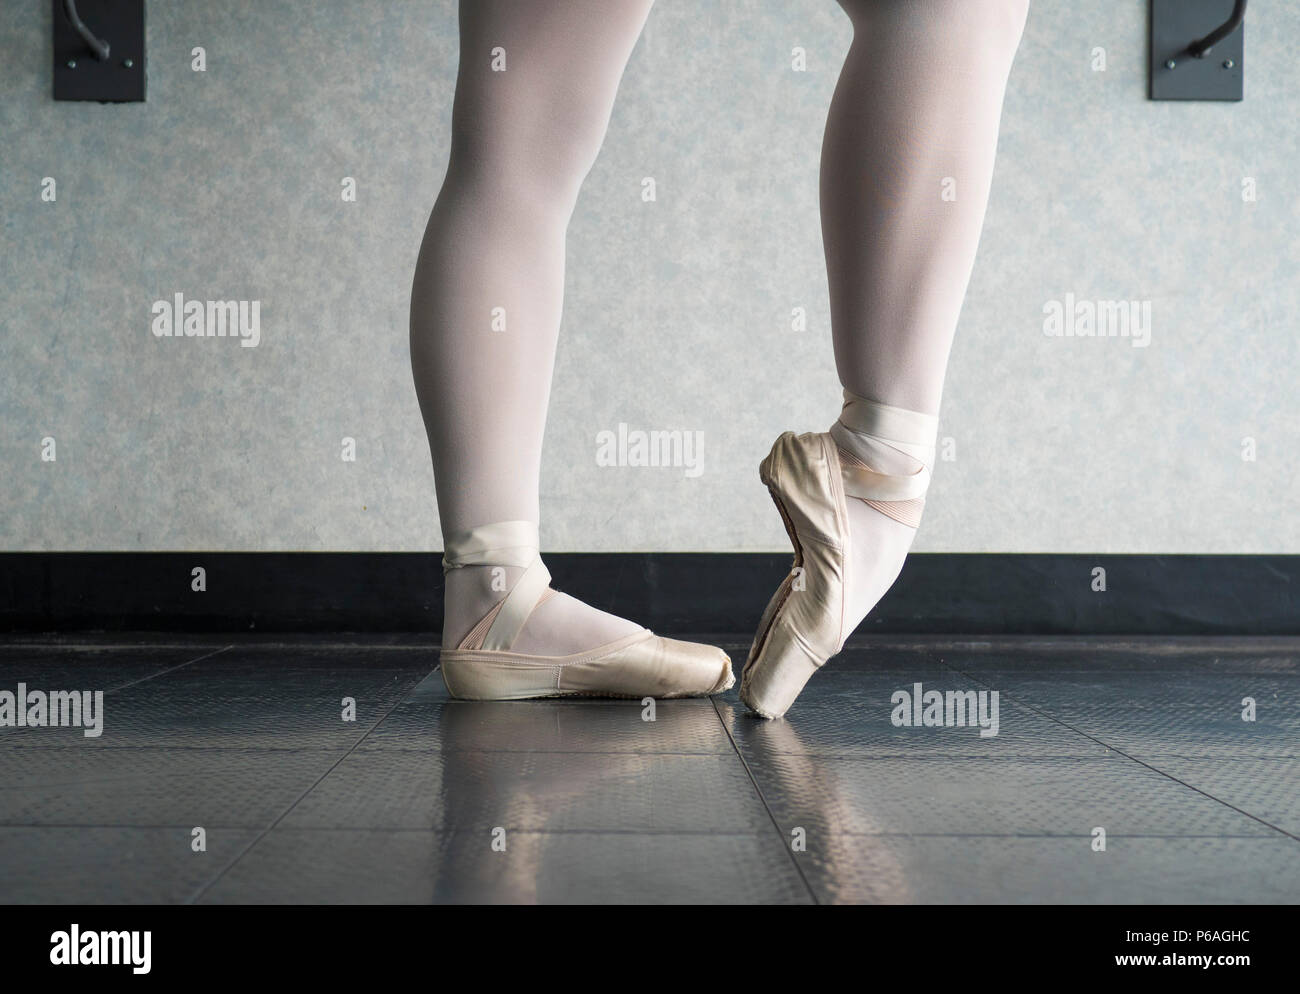 Ballet Dancer bis wärmen ihre Füße in ihrem Spitzenschuhe für Ballett  Klasse Stockfotografie - Alamy